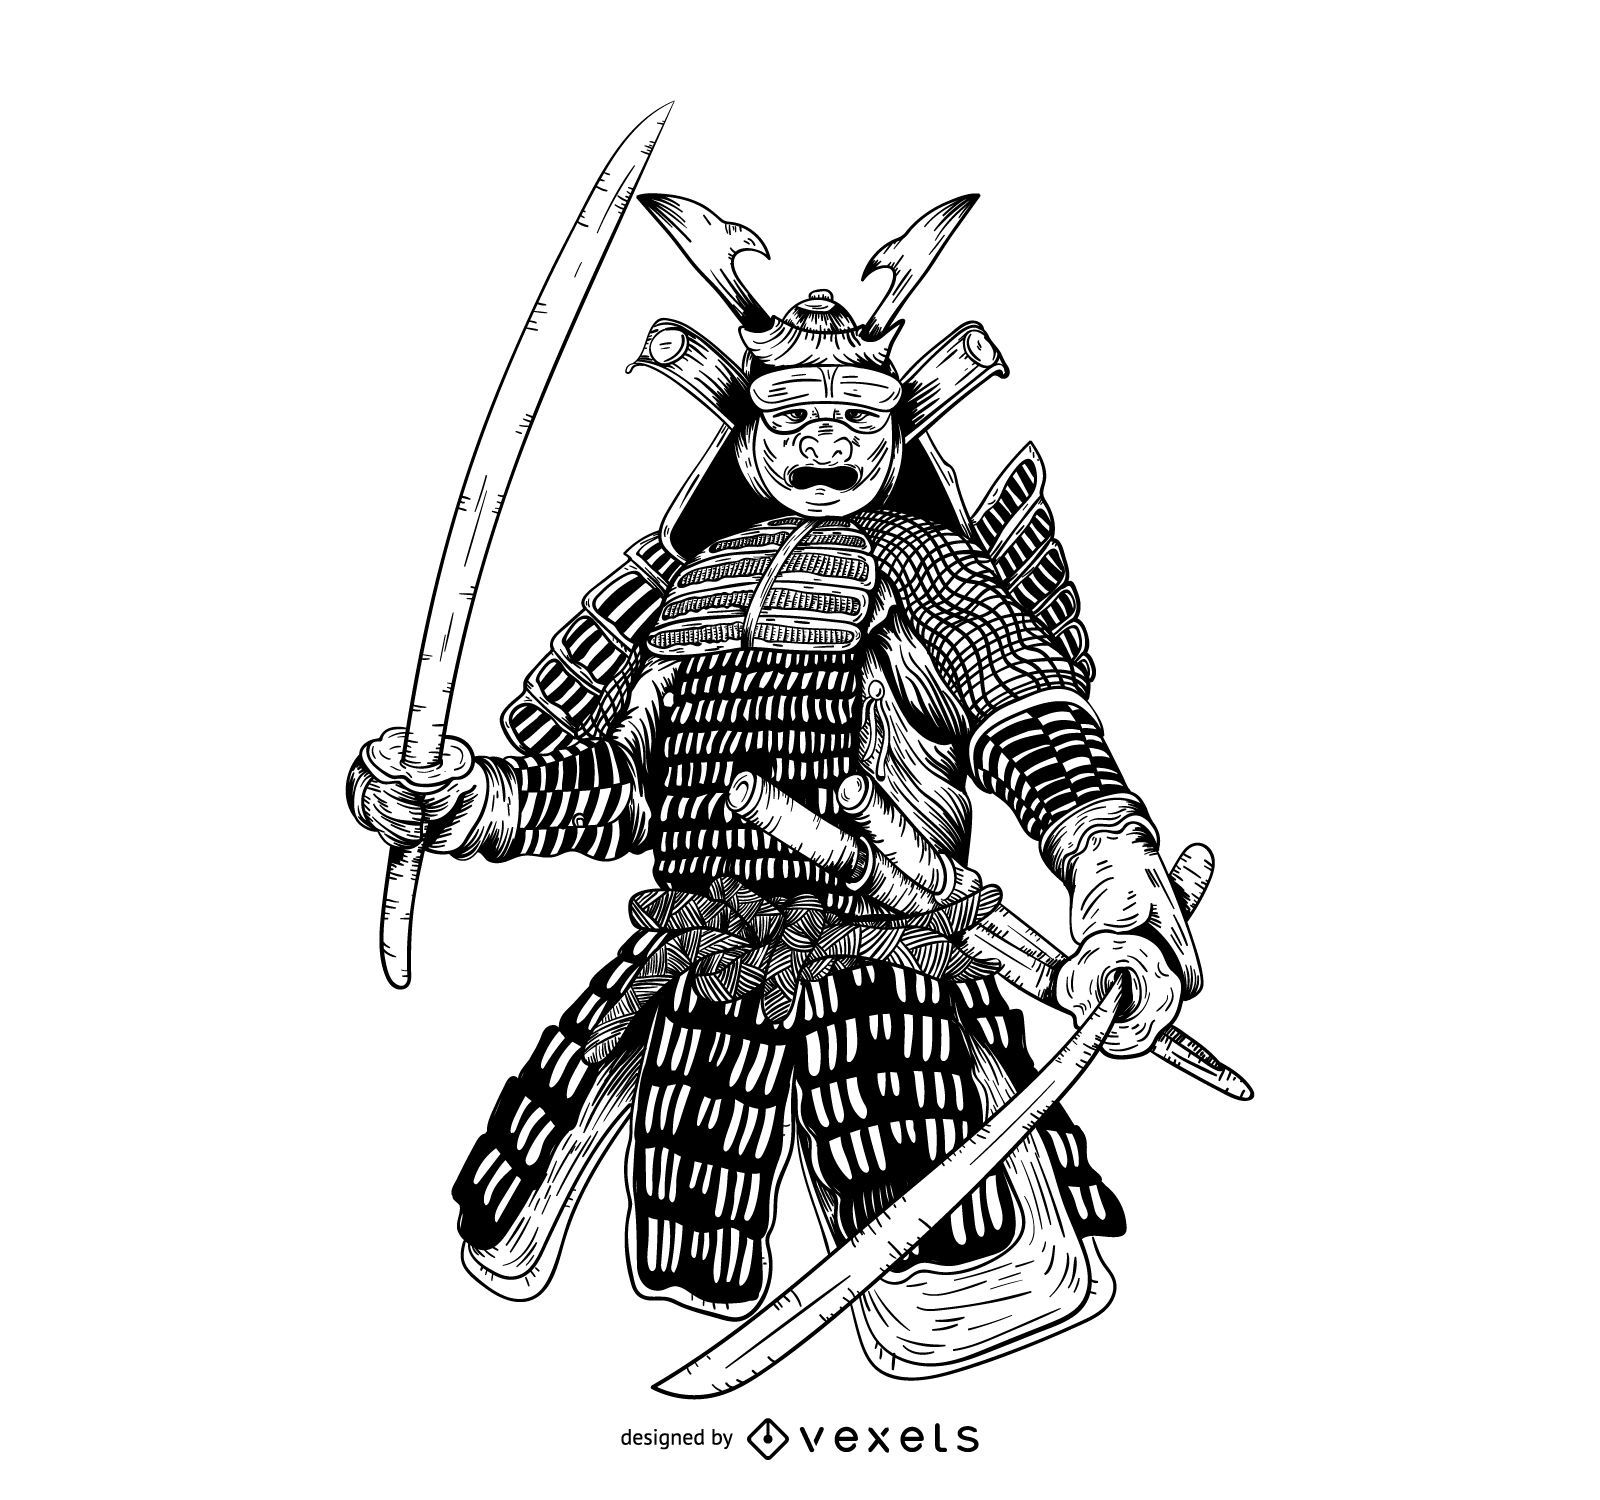 Gezeichnete Grafikillustration der Samurai-Hand